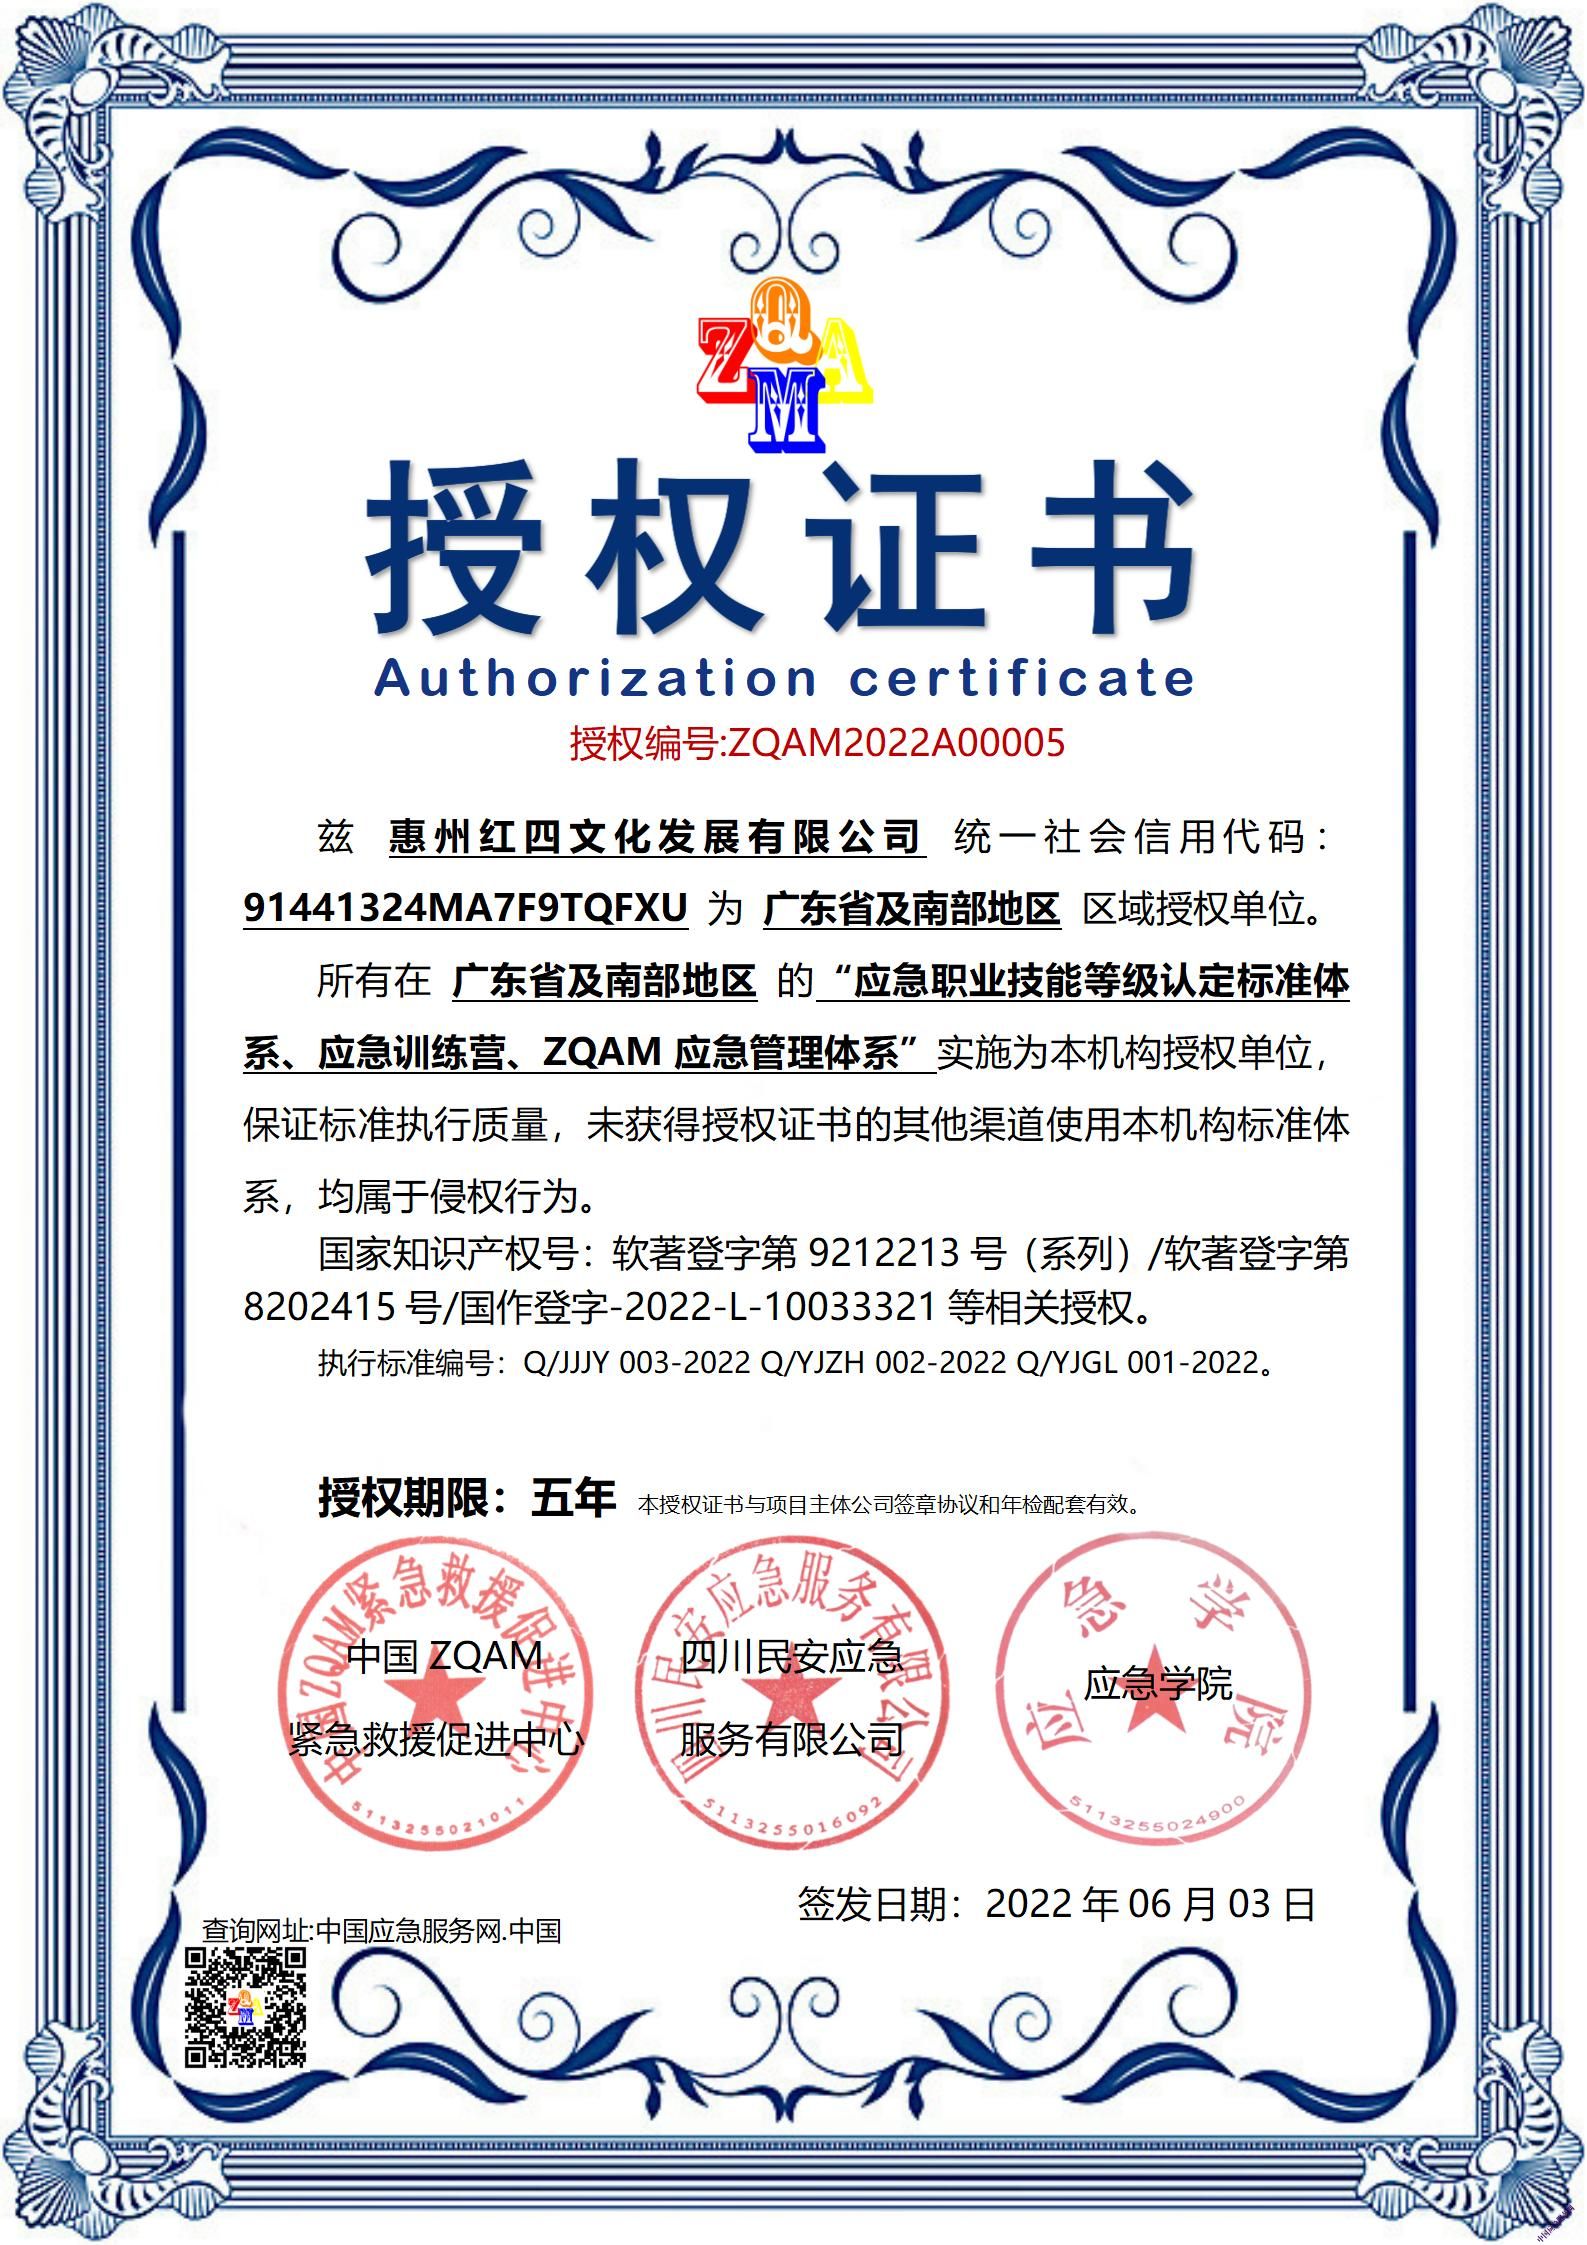 20220603授权证书（龙河教育培训基地）_01.jpg